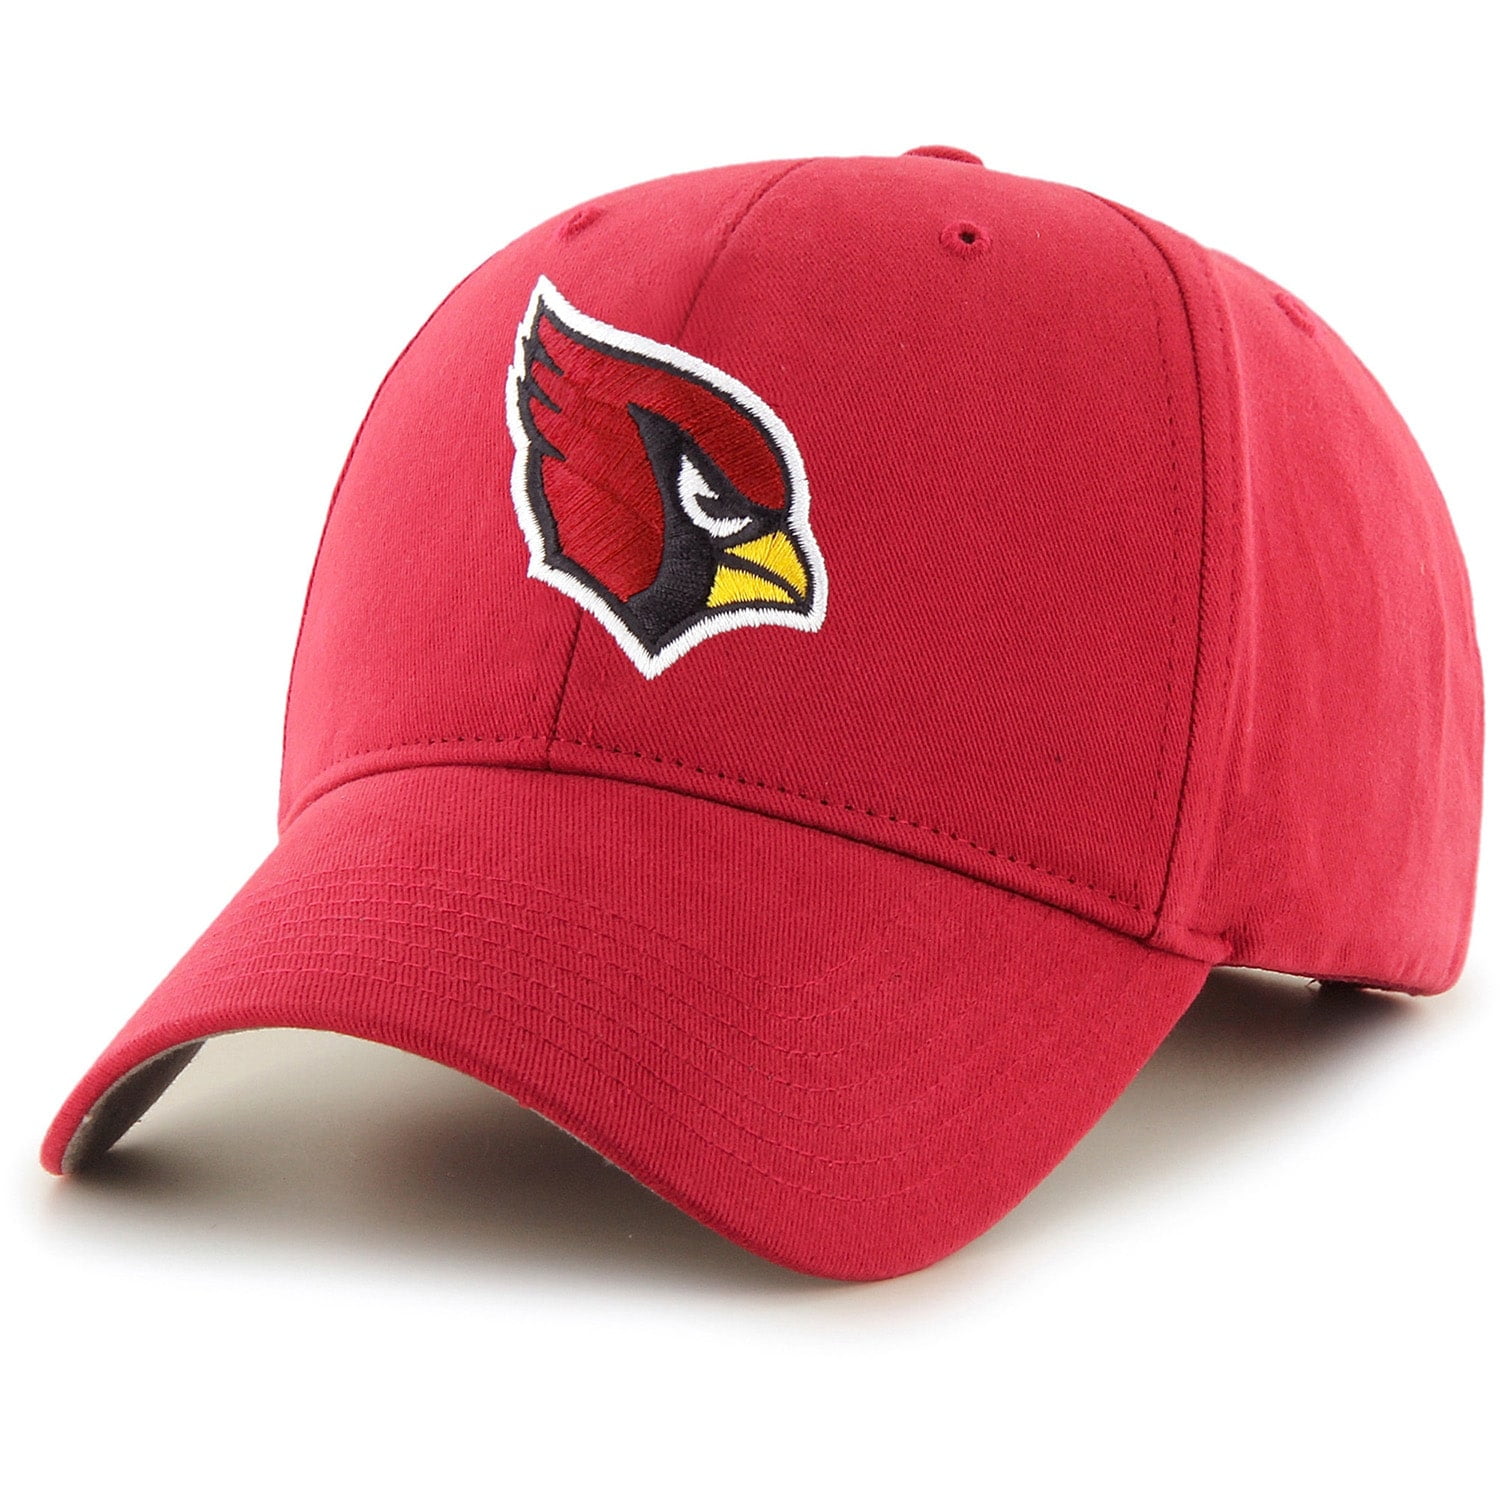 Nfl Arizona Cardinals Hat - Walmart.com